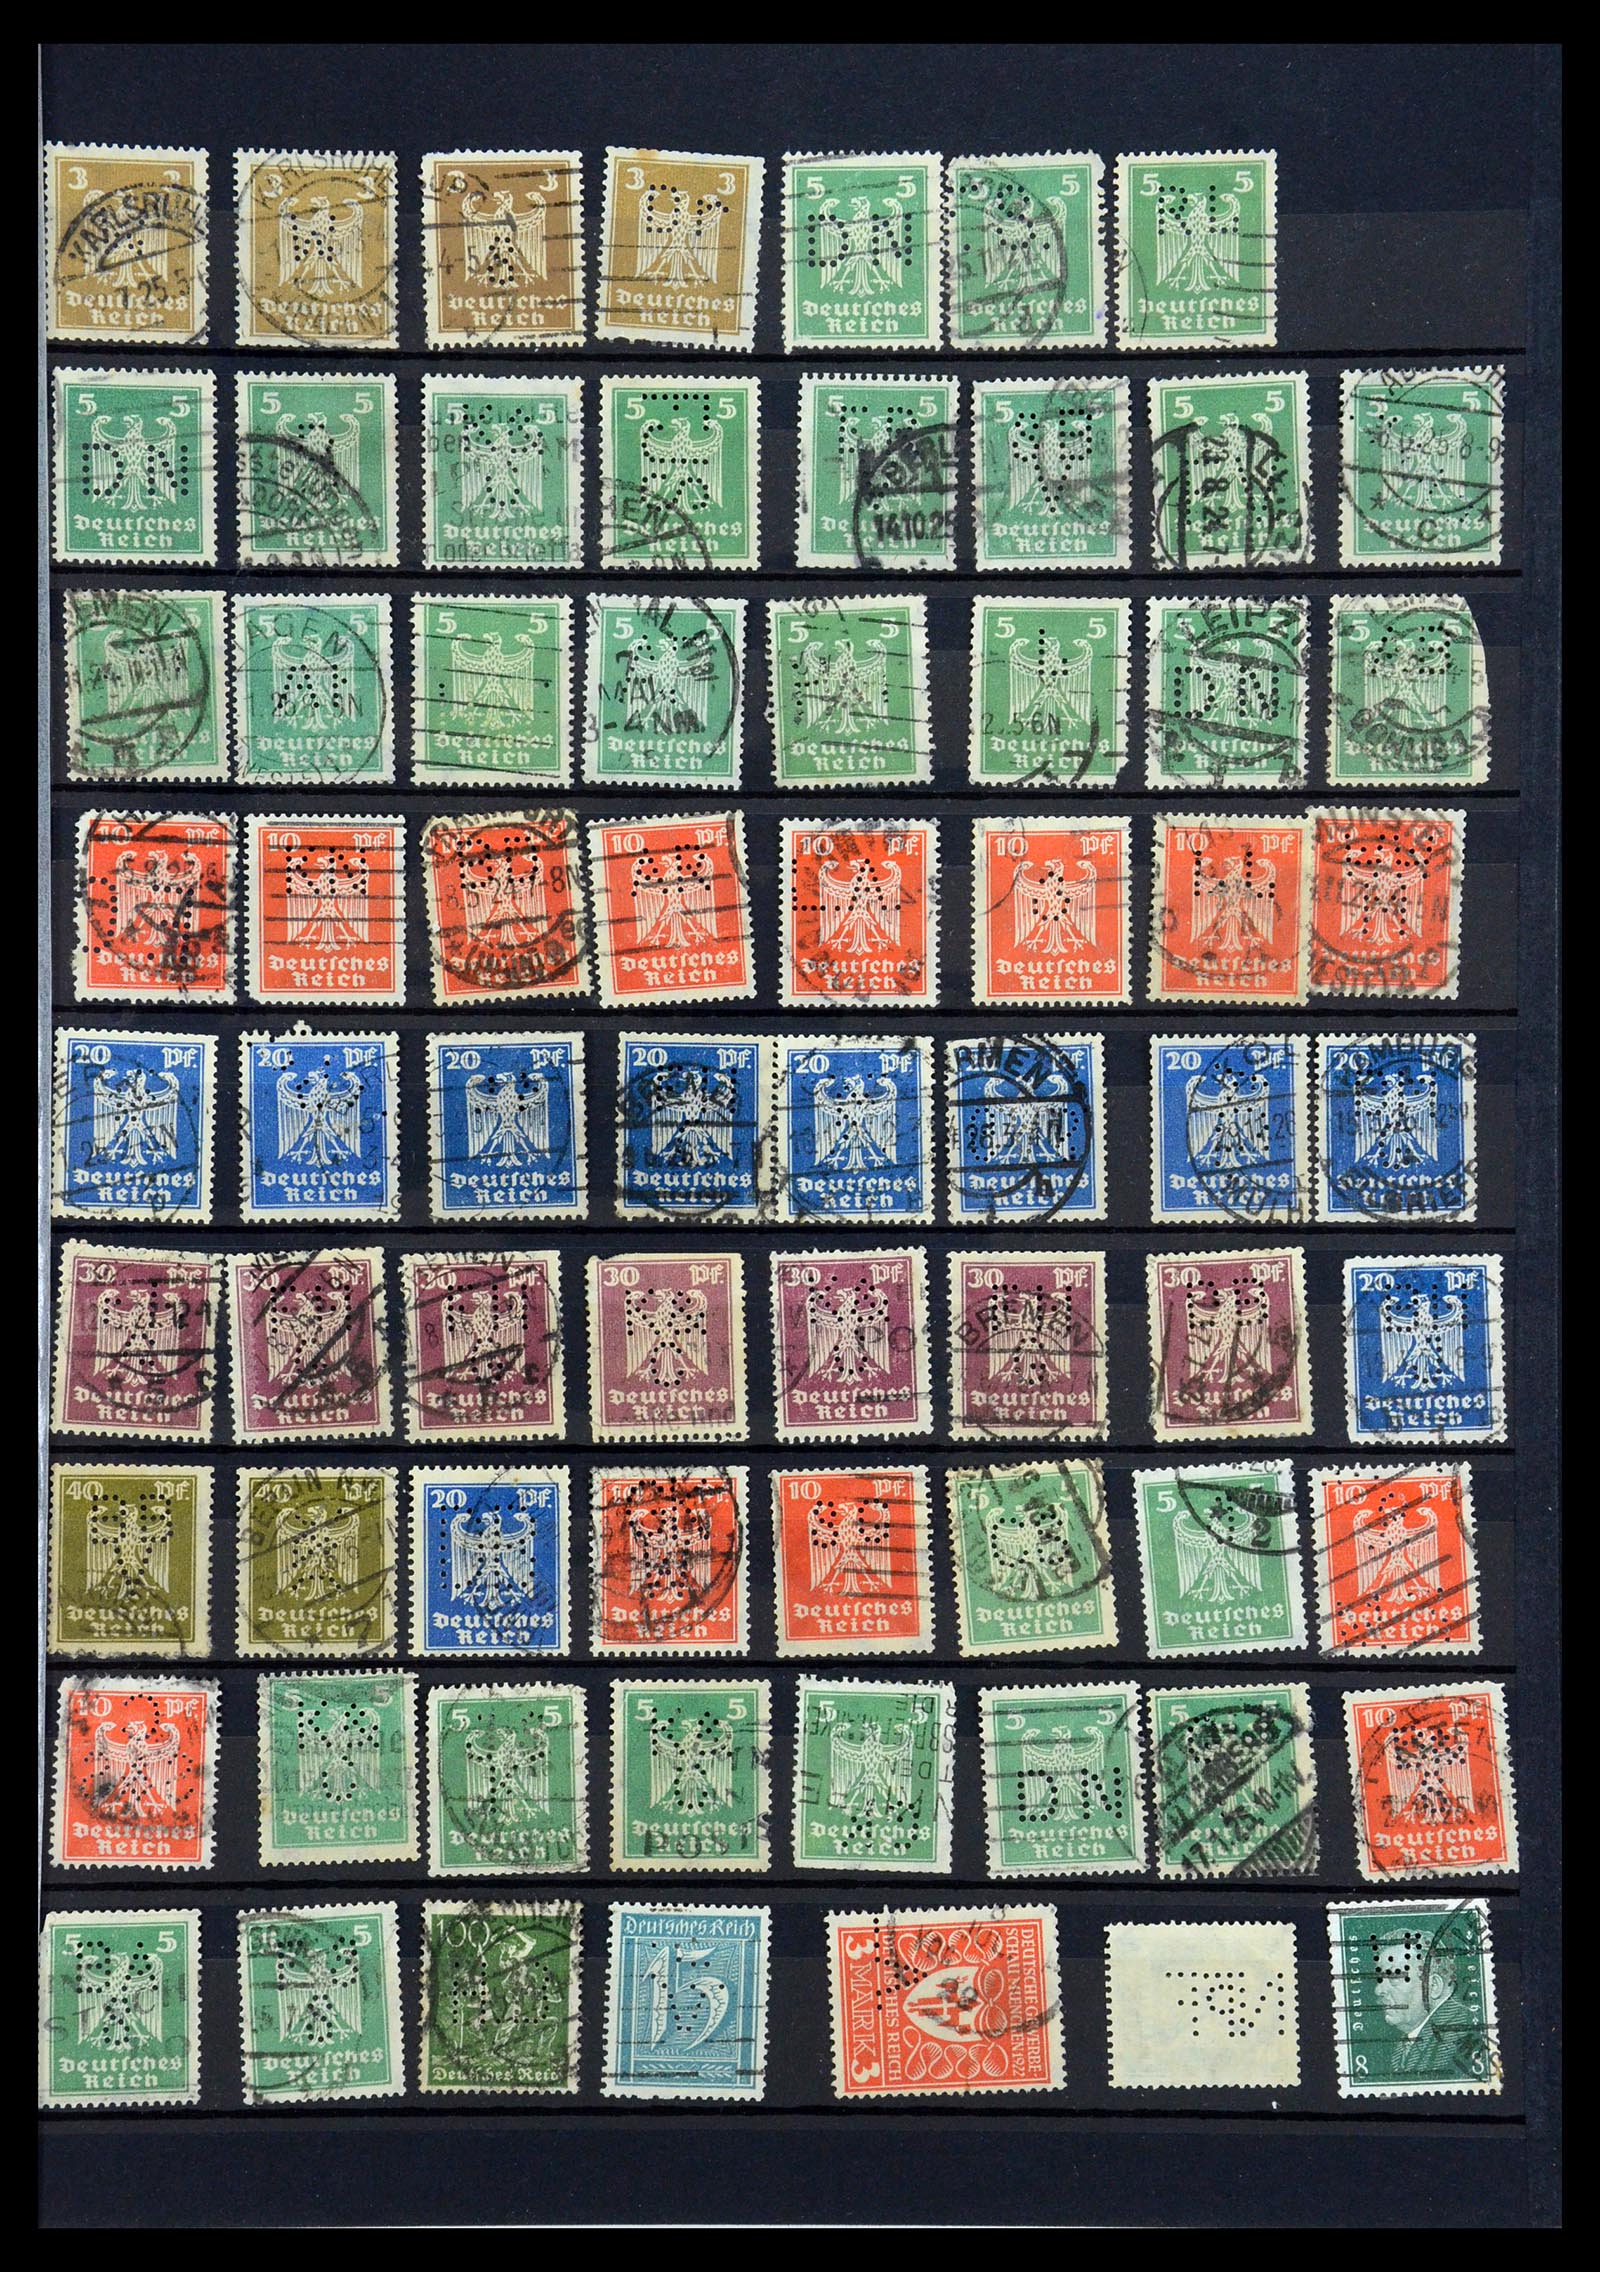 35183 029 - Stamp Collection 35183 German Reich perfins 1880-1945.